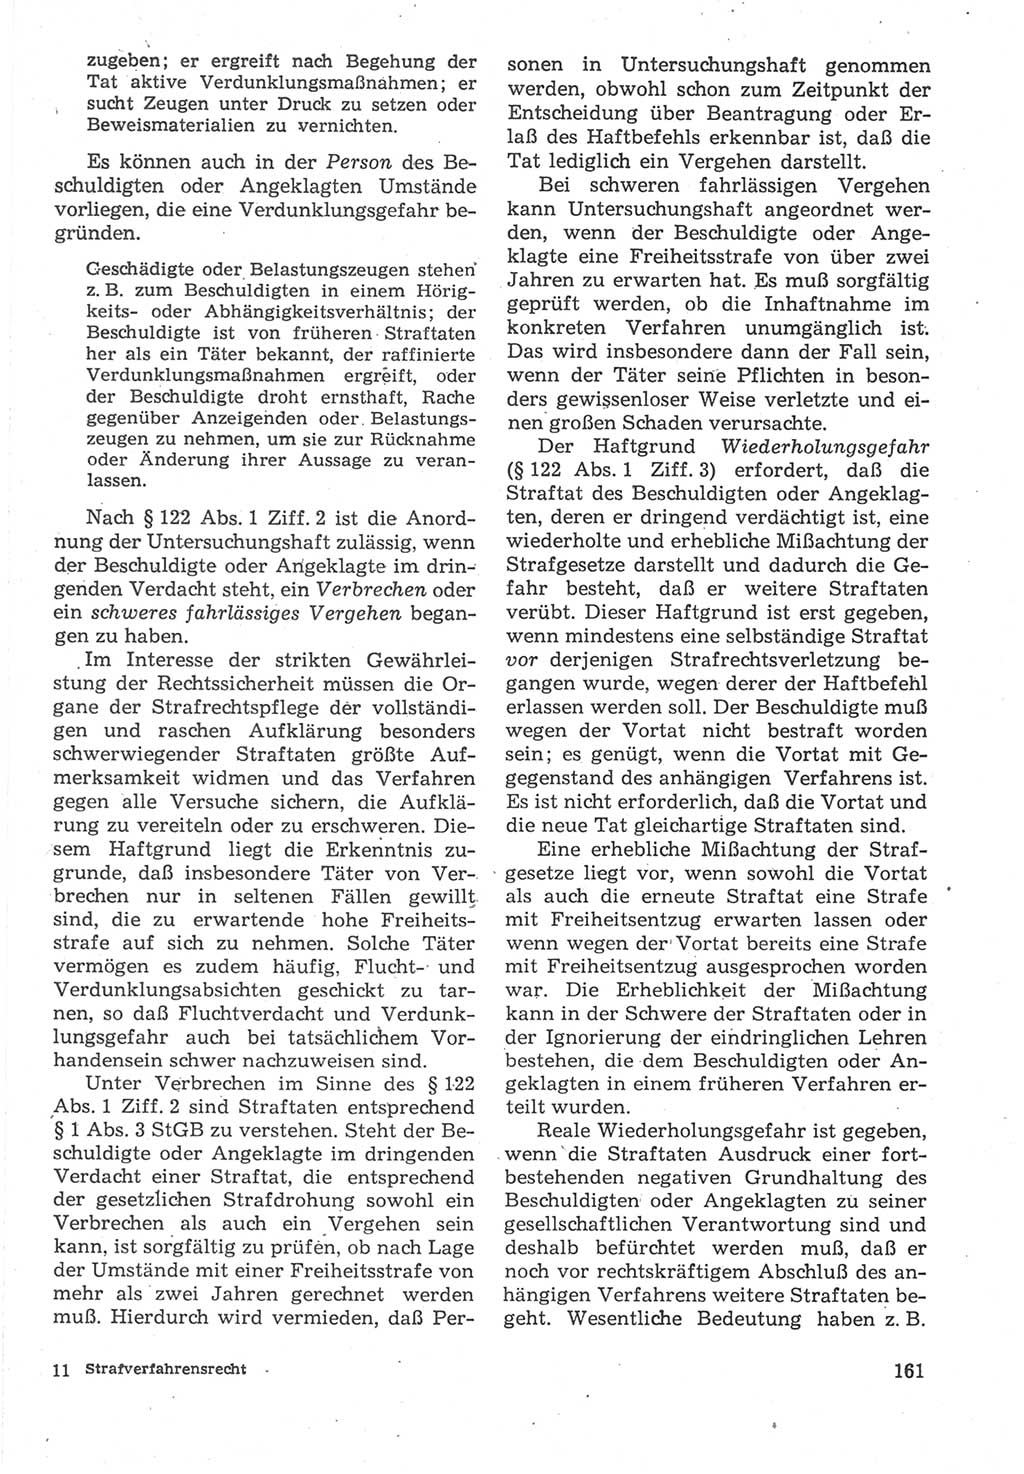 Strafverfahrensrecht [Deutsche Demokratische Republik (DDR)], Lehrbuch 1987, Seite 161 (Strafverf.-R. DDR Lb. 1987, S. 161)